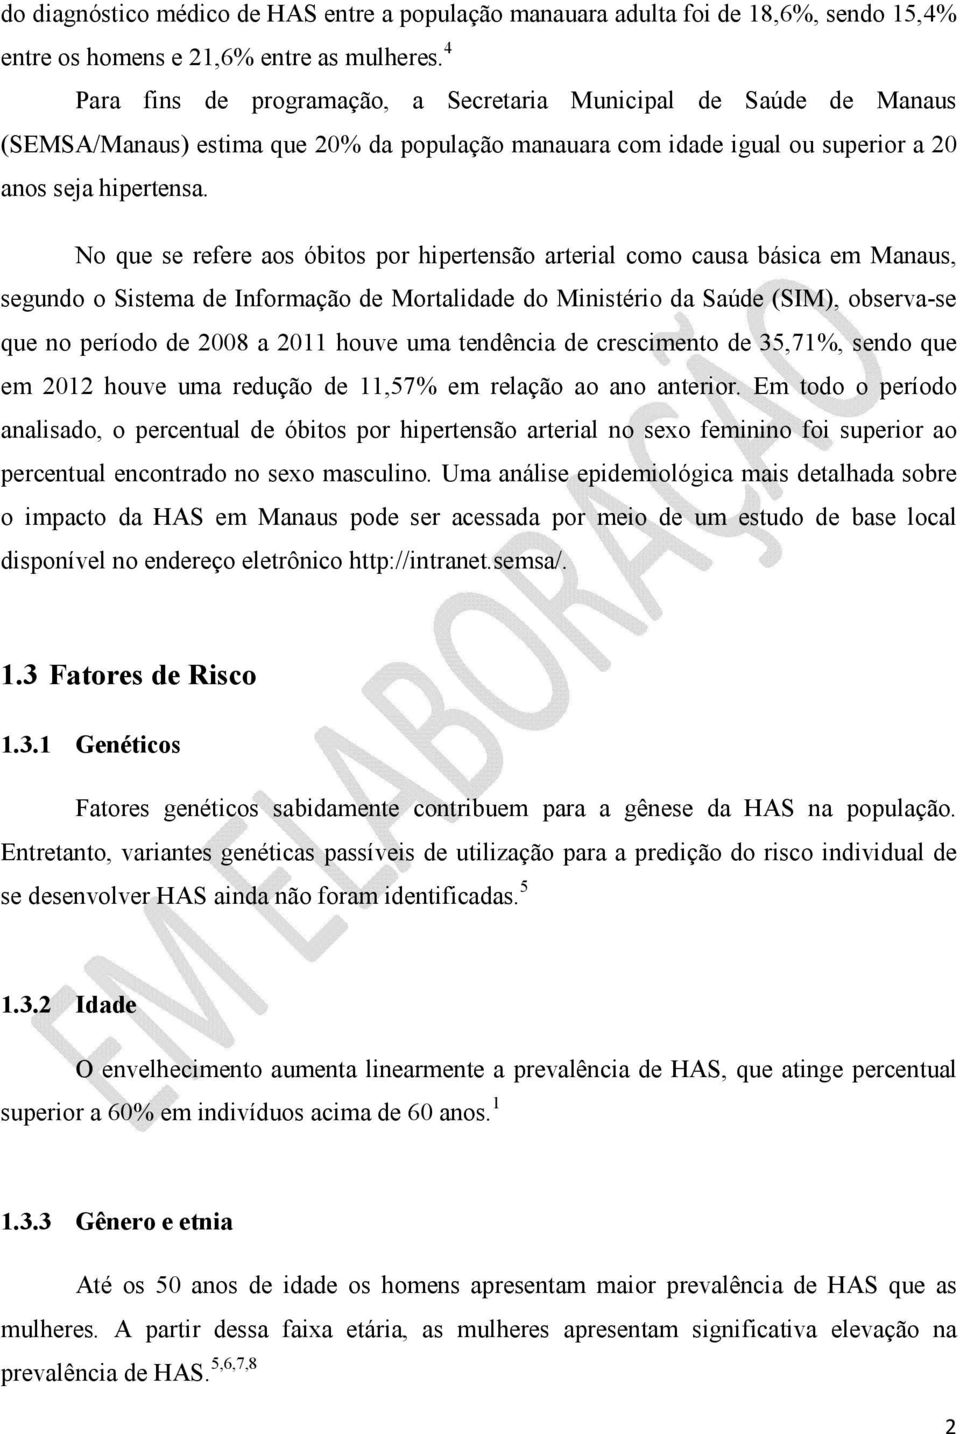 No que se refere aos óbitos por hipertensão arterial como causa básica em Manaus, segundo o Sistema de Informação de Mortalidade do Ministério da Saúde (SIM), observa-se que no período de 2008 a 2011